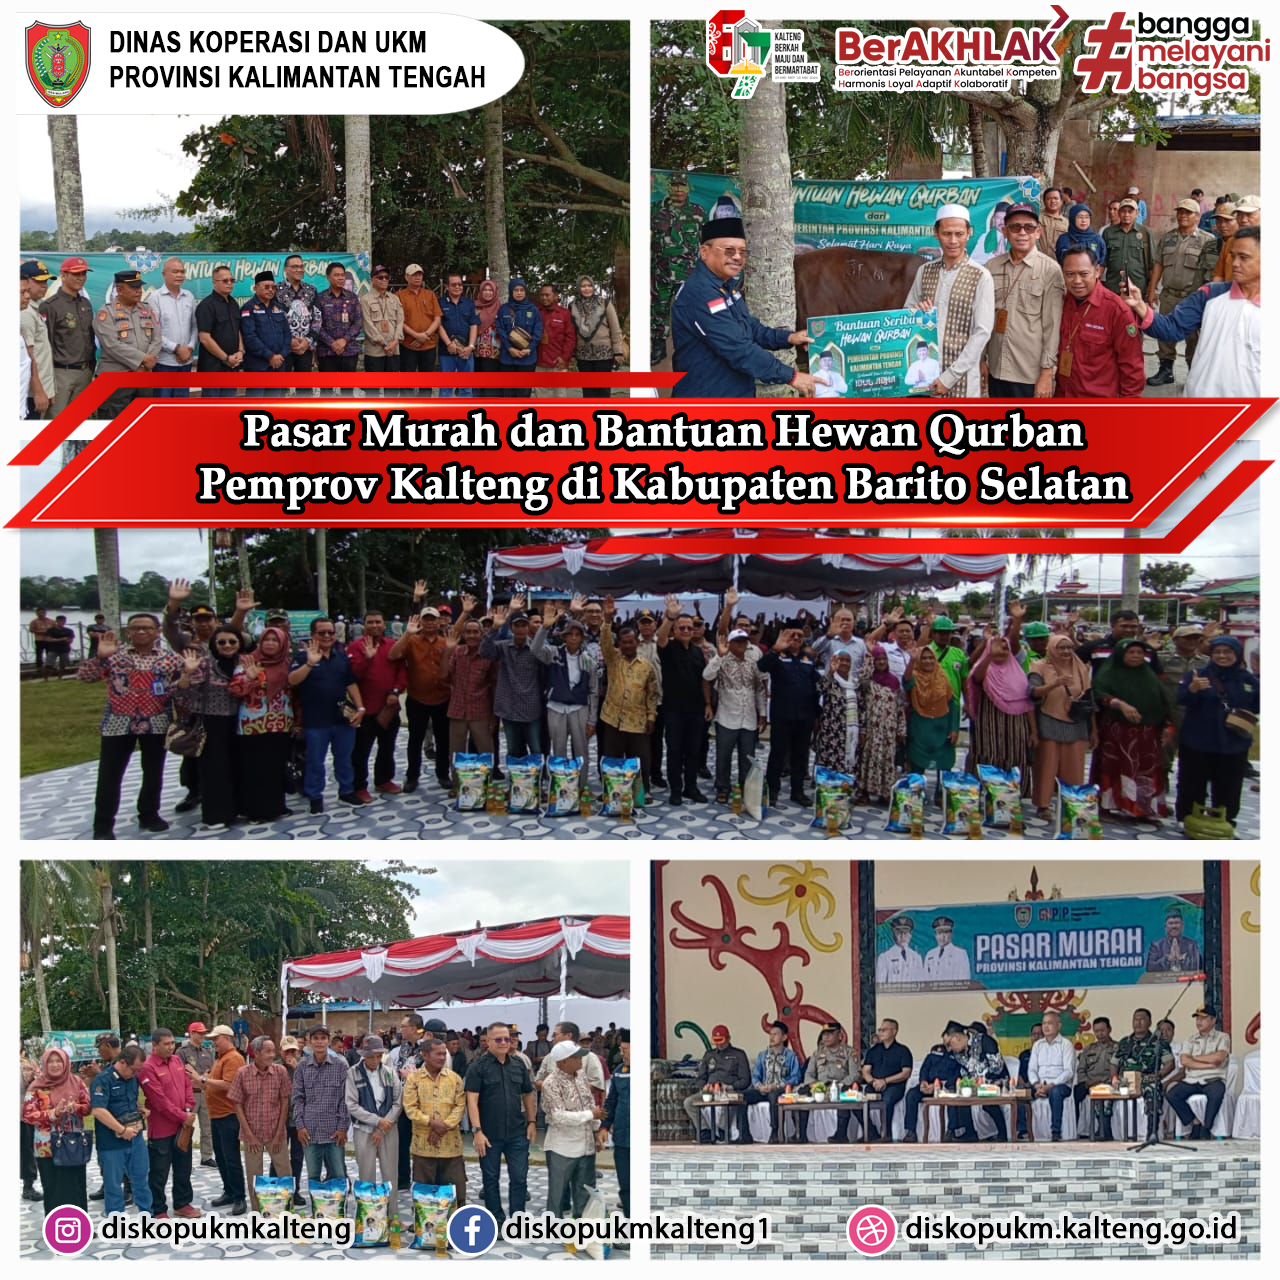 Pasar Murah dan Penyerahan Bantuan Hewan Qurban di Taman Iring Witu Kabupaten Barito Selatan